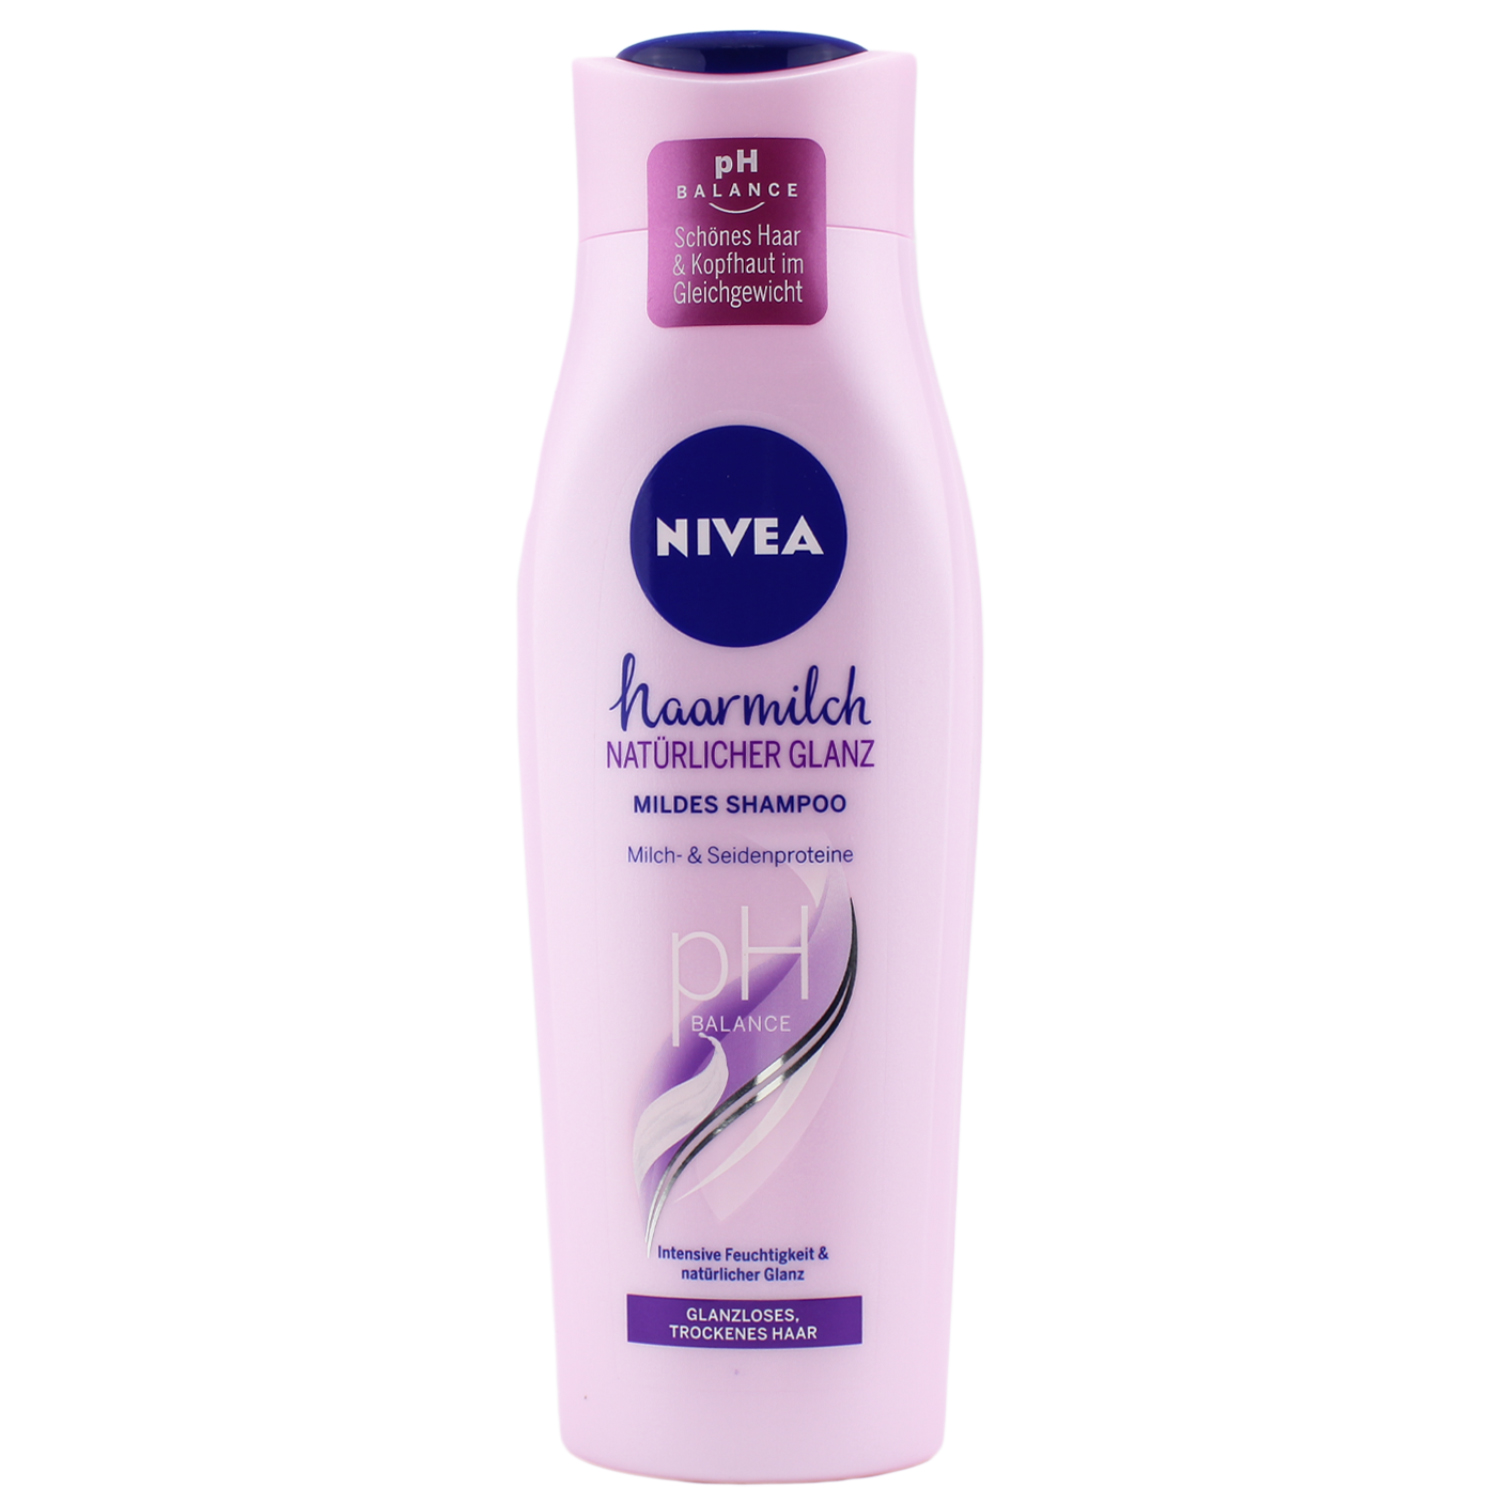 Nivea Haarmilch Natürlicher Glanz pH-Balance Shampoo 250ml